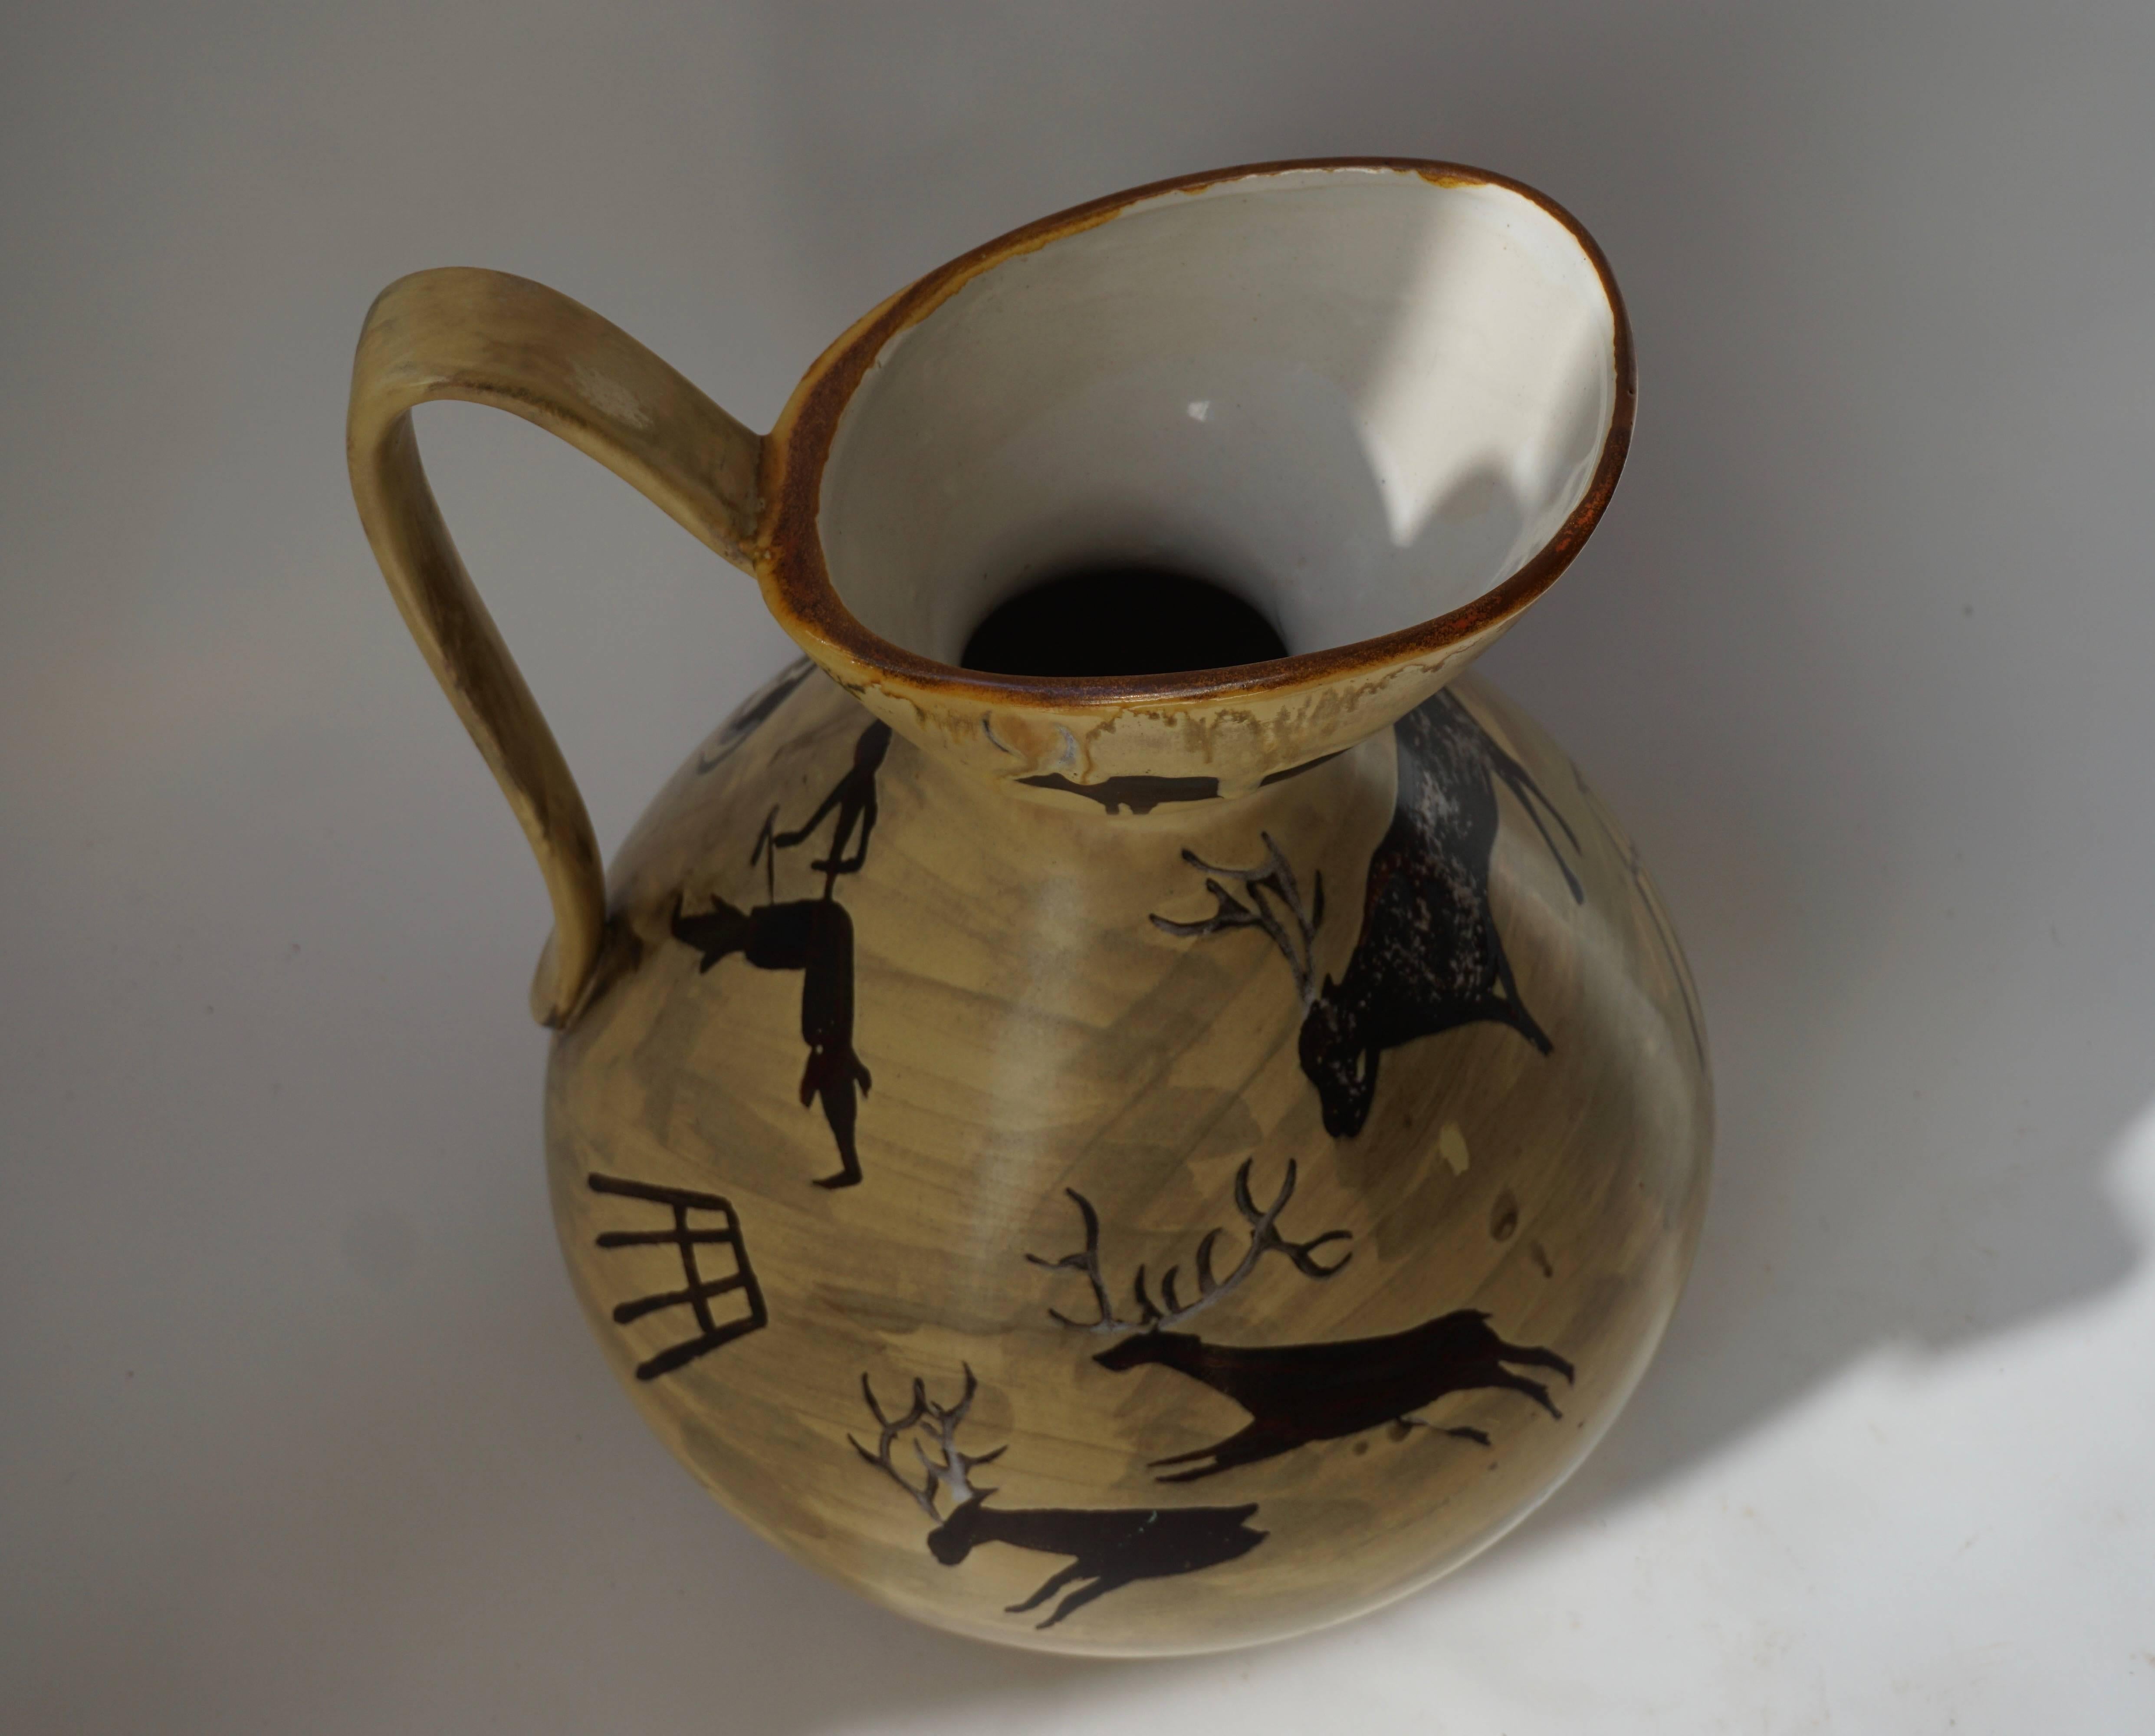 Ceramic vase, signed Altamida.
Measures: Diameter 30 cm,
height 42 cm.